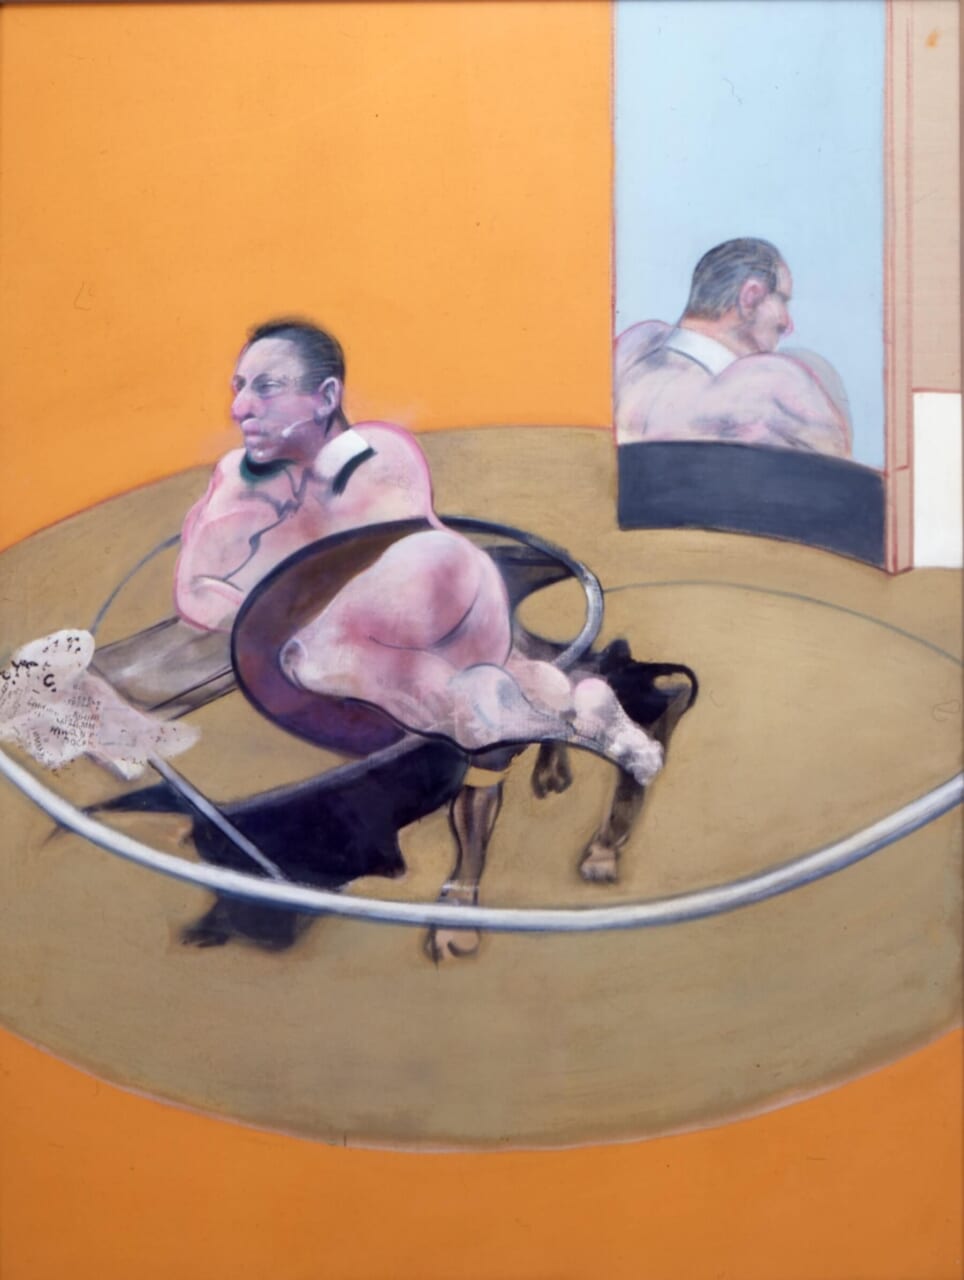 フランシス・ベーコン《横たわる人物》1977年　富山県美術館蔵
Lying Figure, 1977 [CR 77-07]© The Estate of Francis Bacon. All rights reserved. DACS & JASPAR 2022  G2915